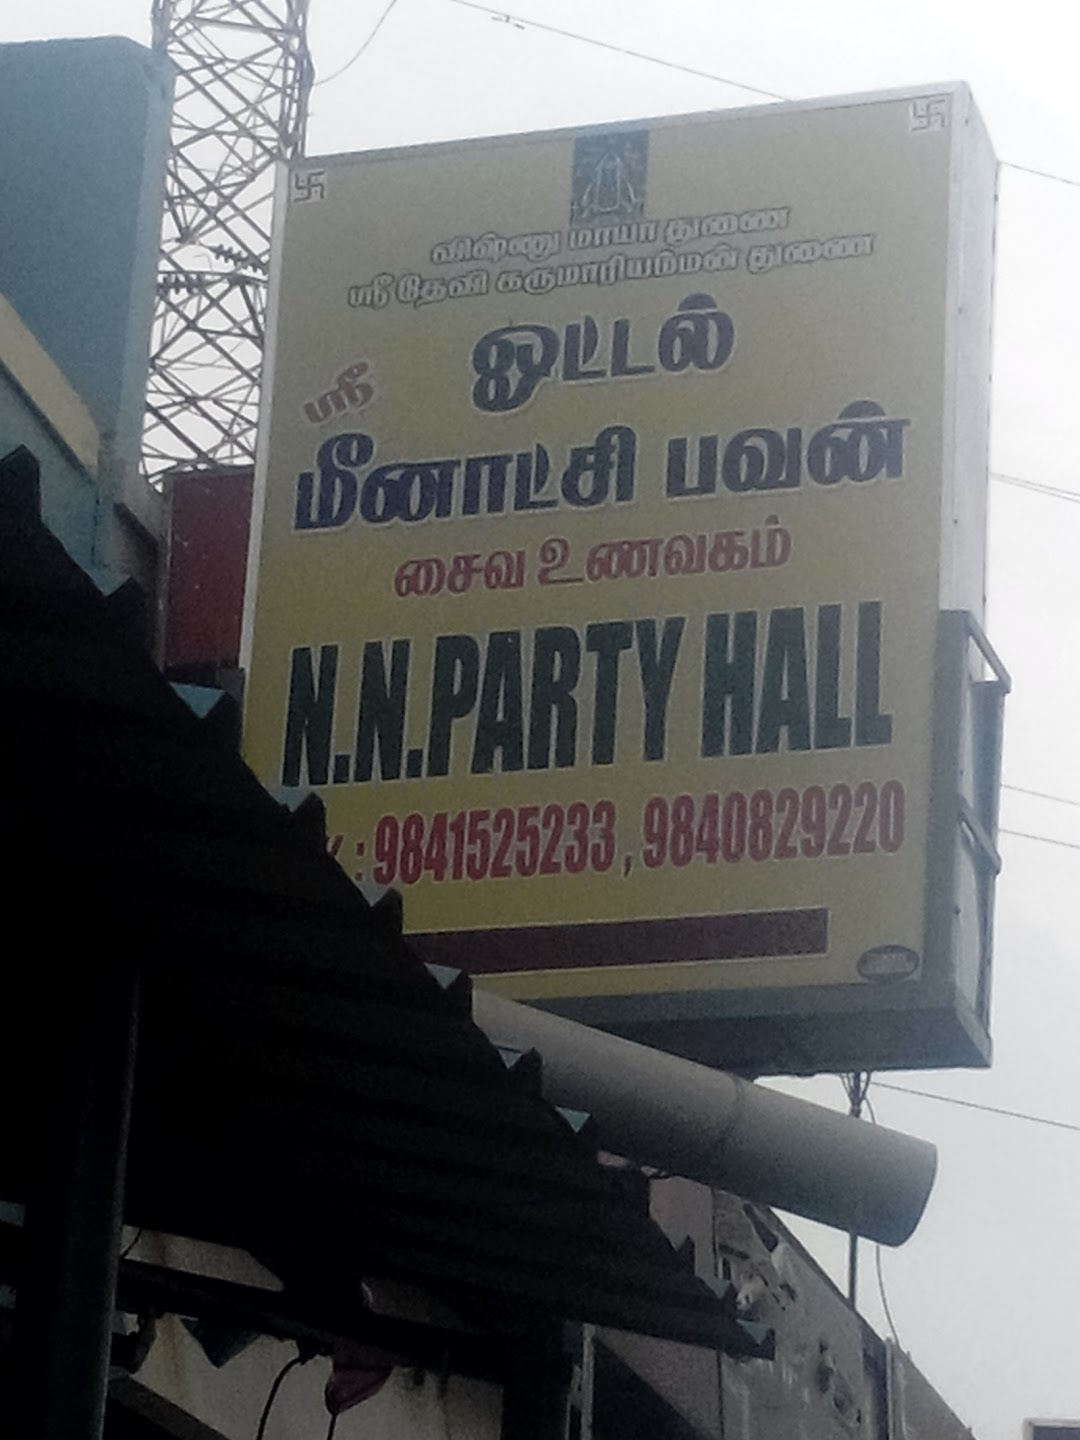 Sri Hotel Meenakshi Bavan - N. N. Party Hall